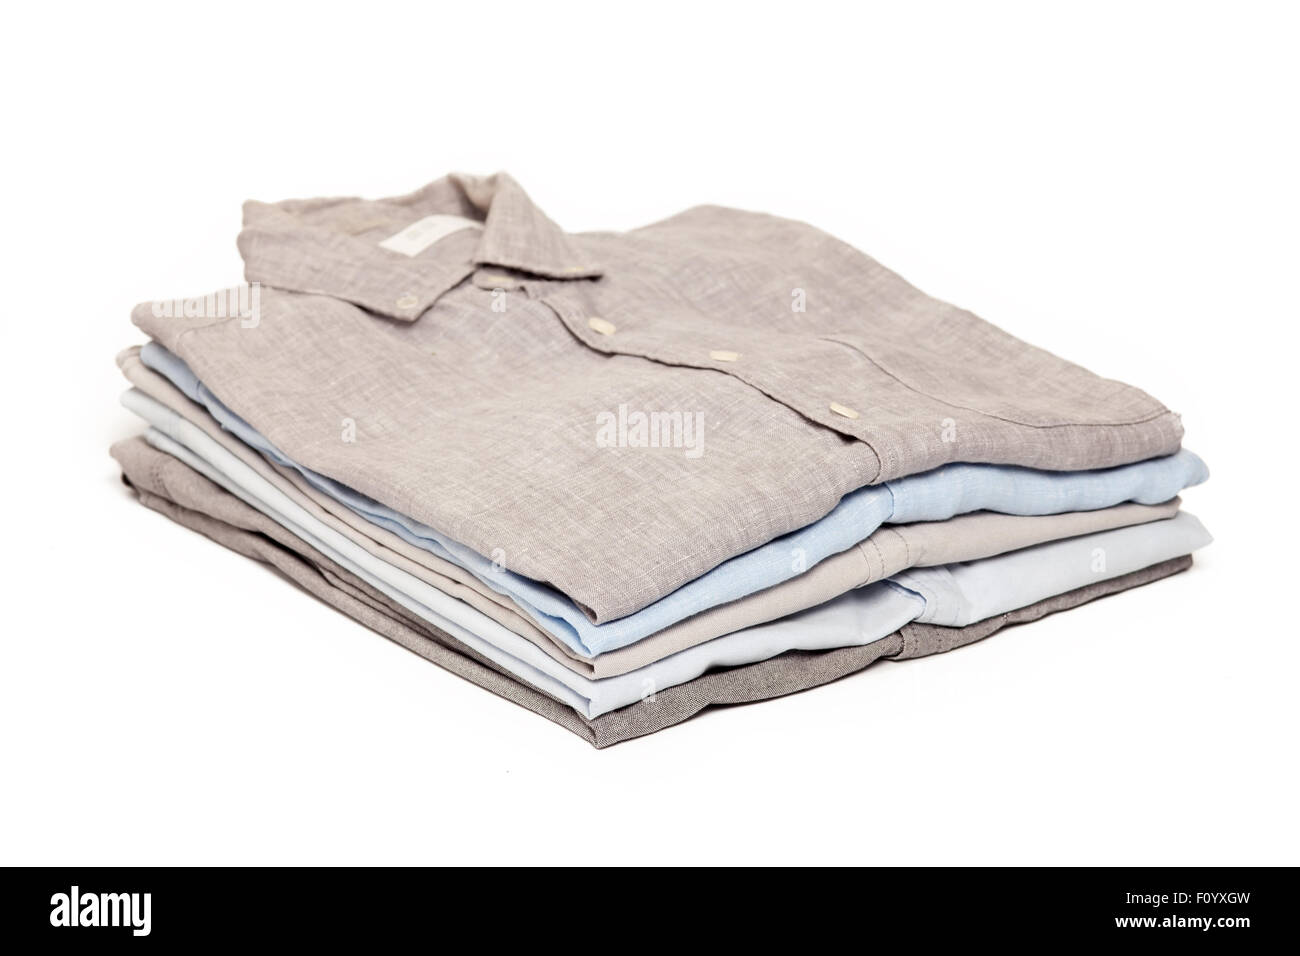 ein Bügeleisen/-Brett Hausarbeit gebügelt gefaltete Hemden sauber Konzept Stillleben Kleidungsstück Bekleidung Stoff innen weißer Hintergrund Stockfoto